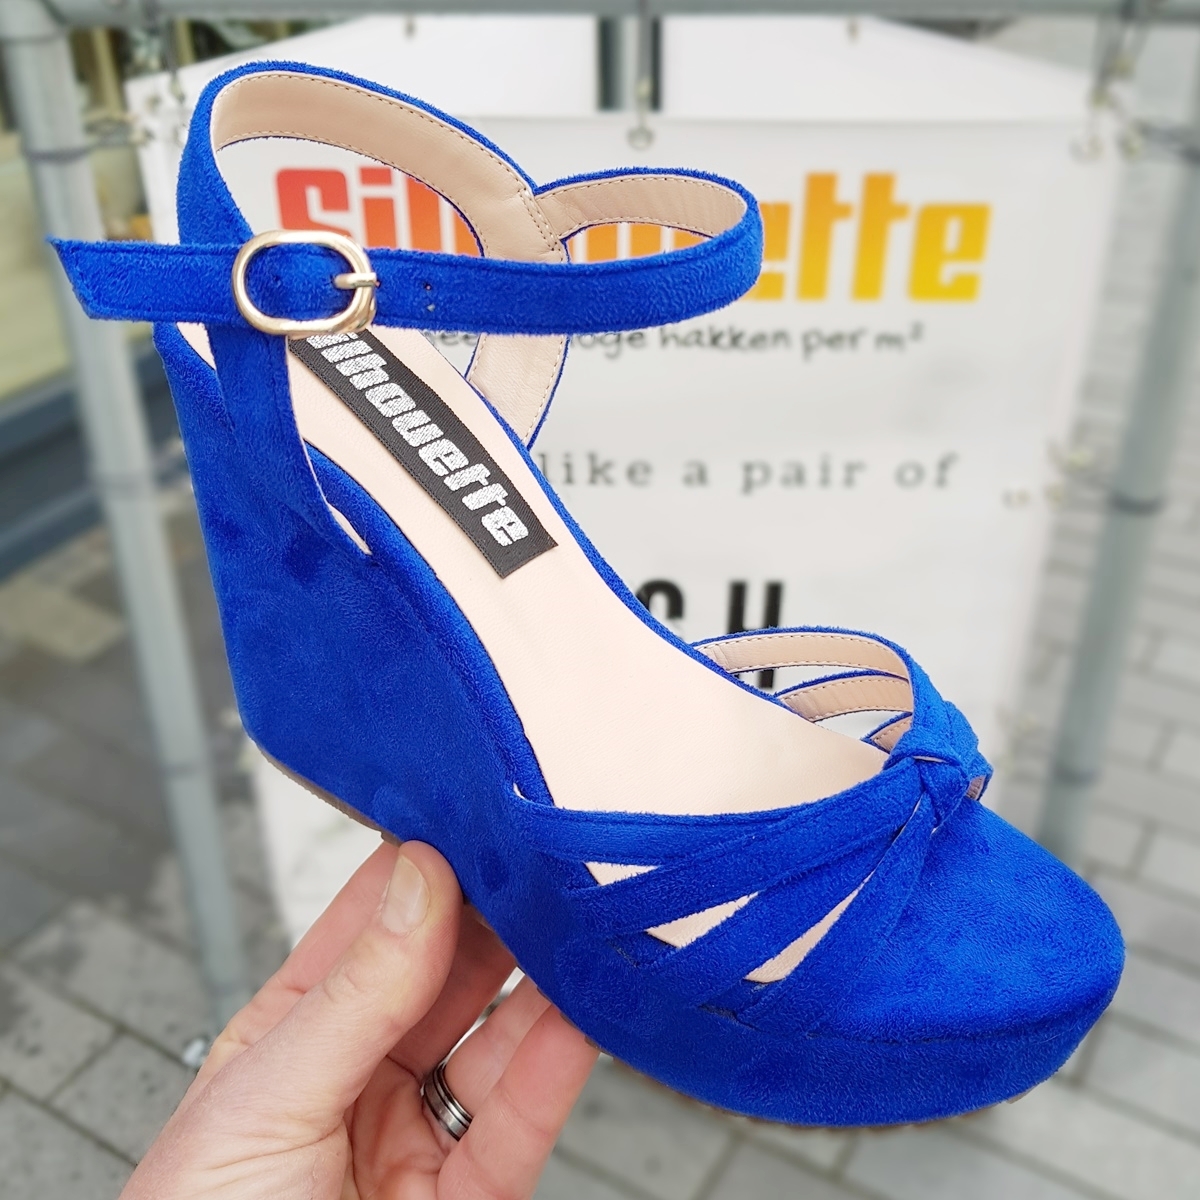 Blauwe sleehak sandalen in kleine maten met smalle bandjes | Sleehakken voor smalle kleine voeten